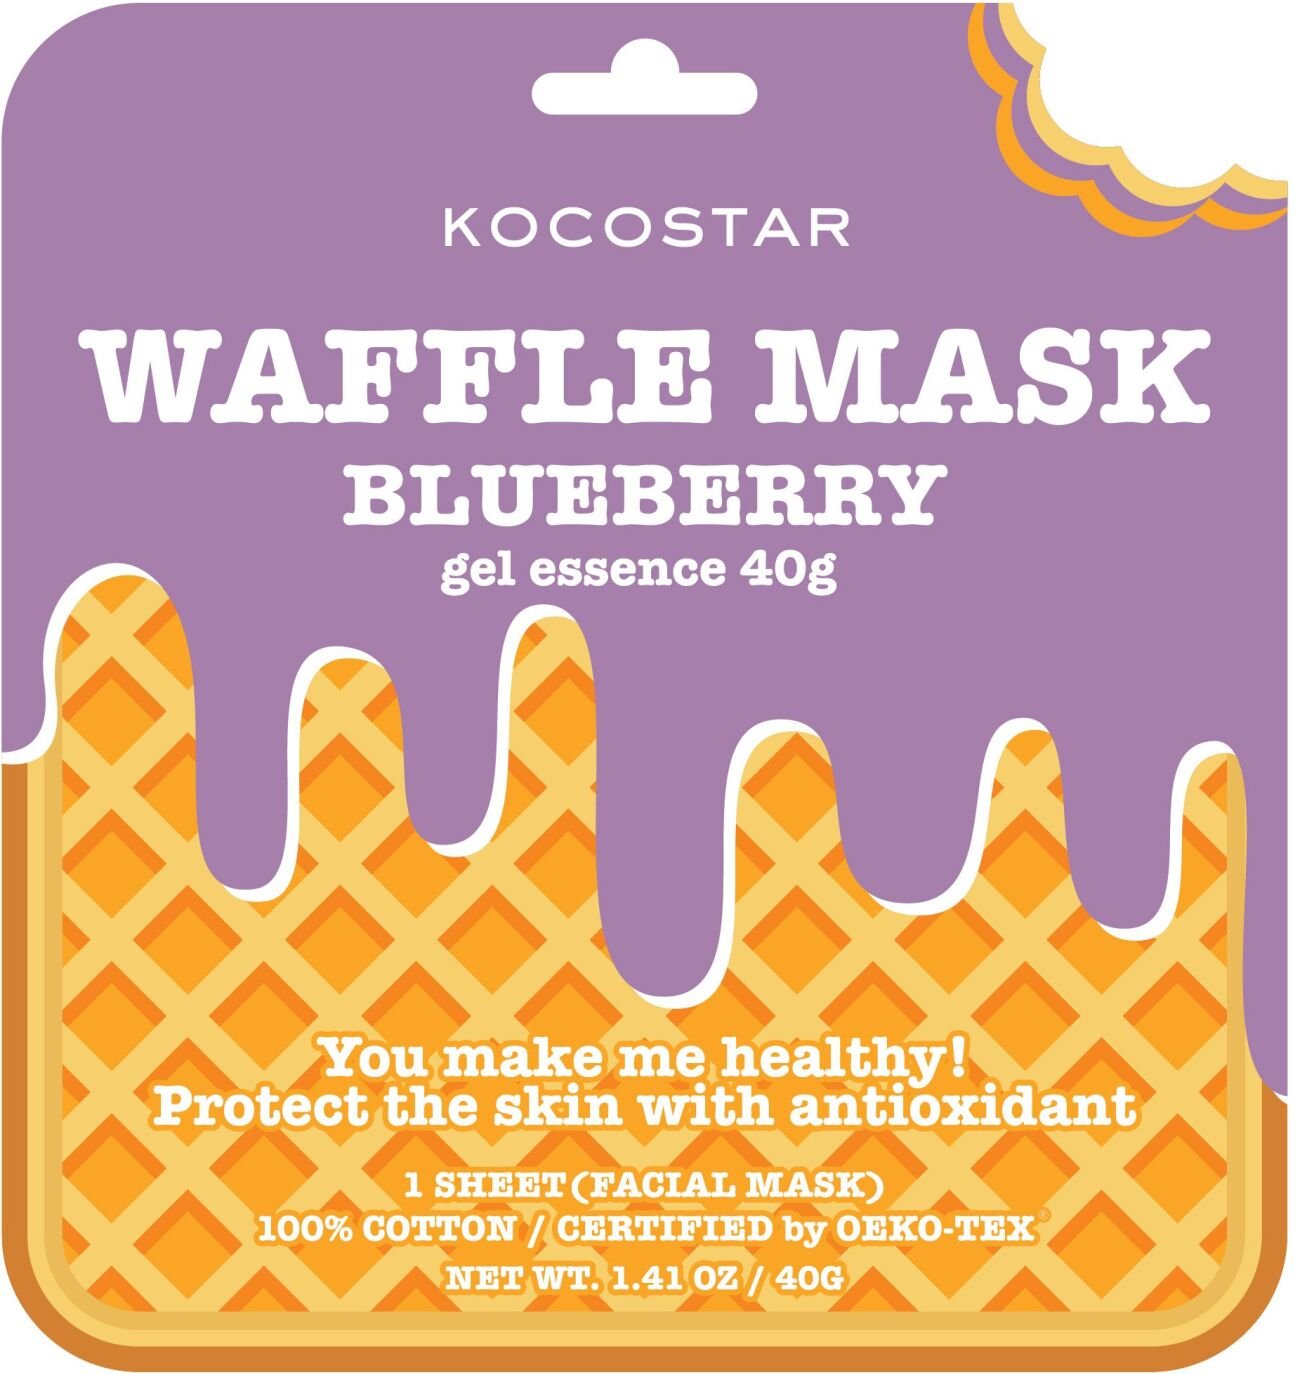 Kocostar Waffle Mask Blueberry 40 g / 1 sheet